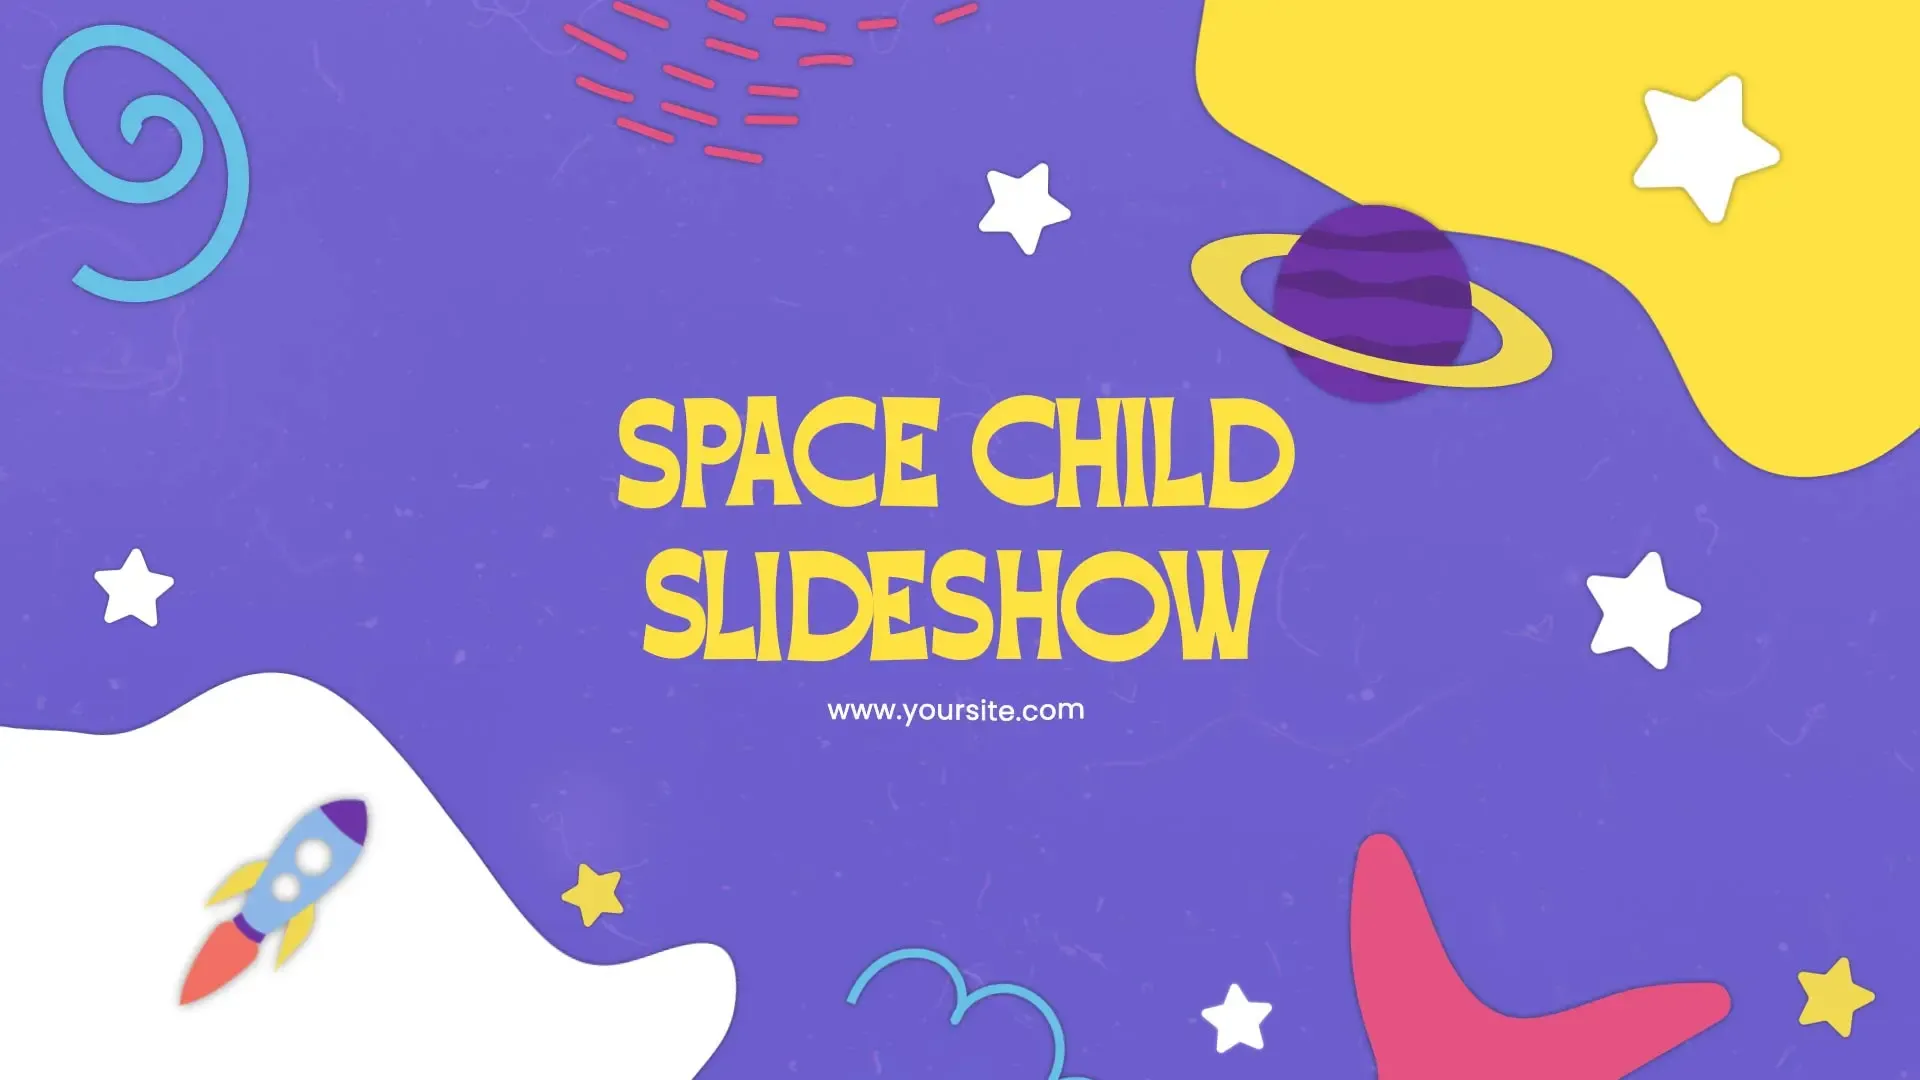 Cartoonish Space Child Slideshow